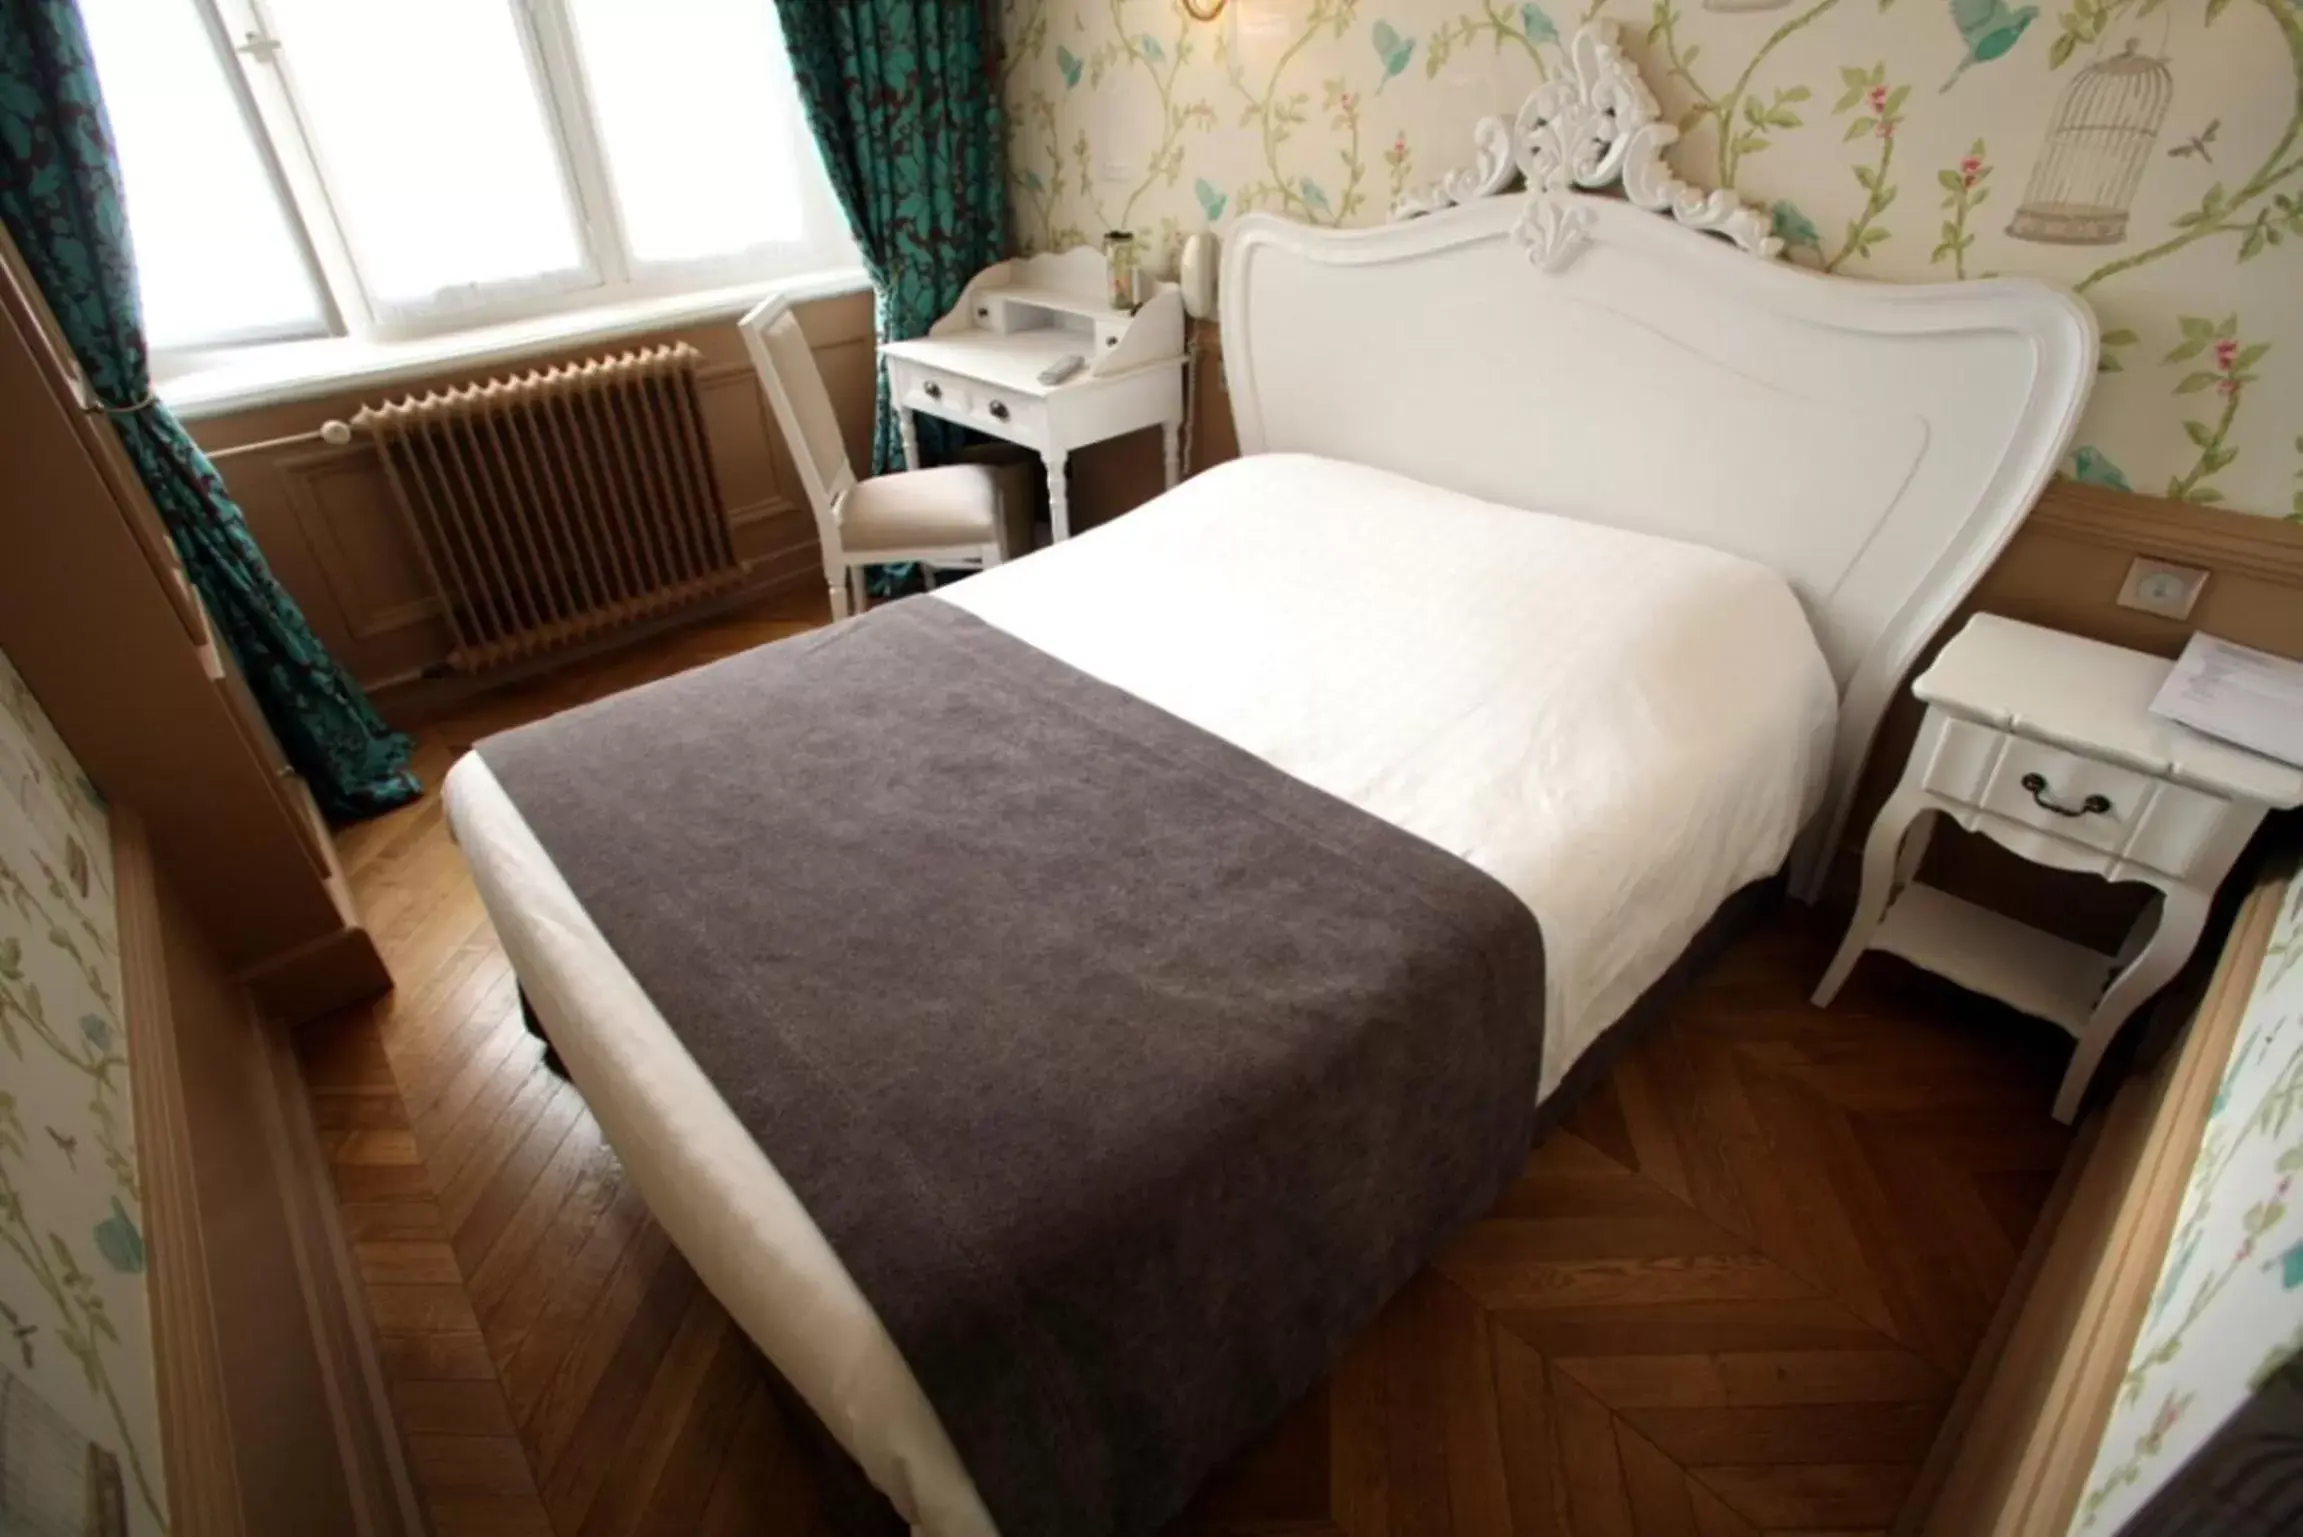  Comfort Double Room in Bayard Bellecour